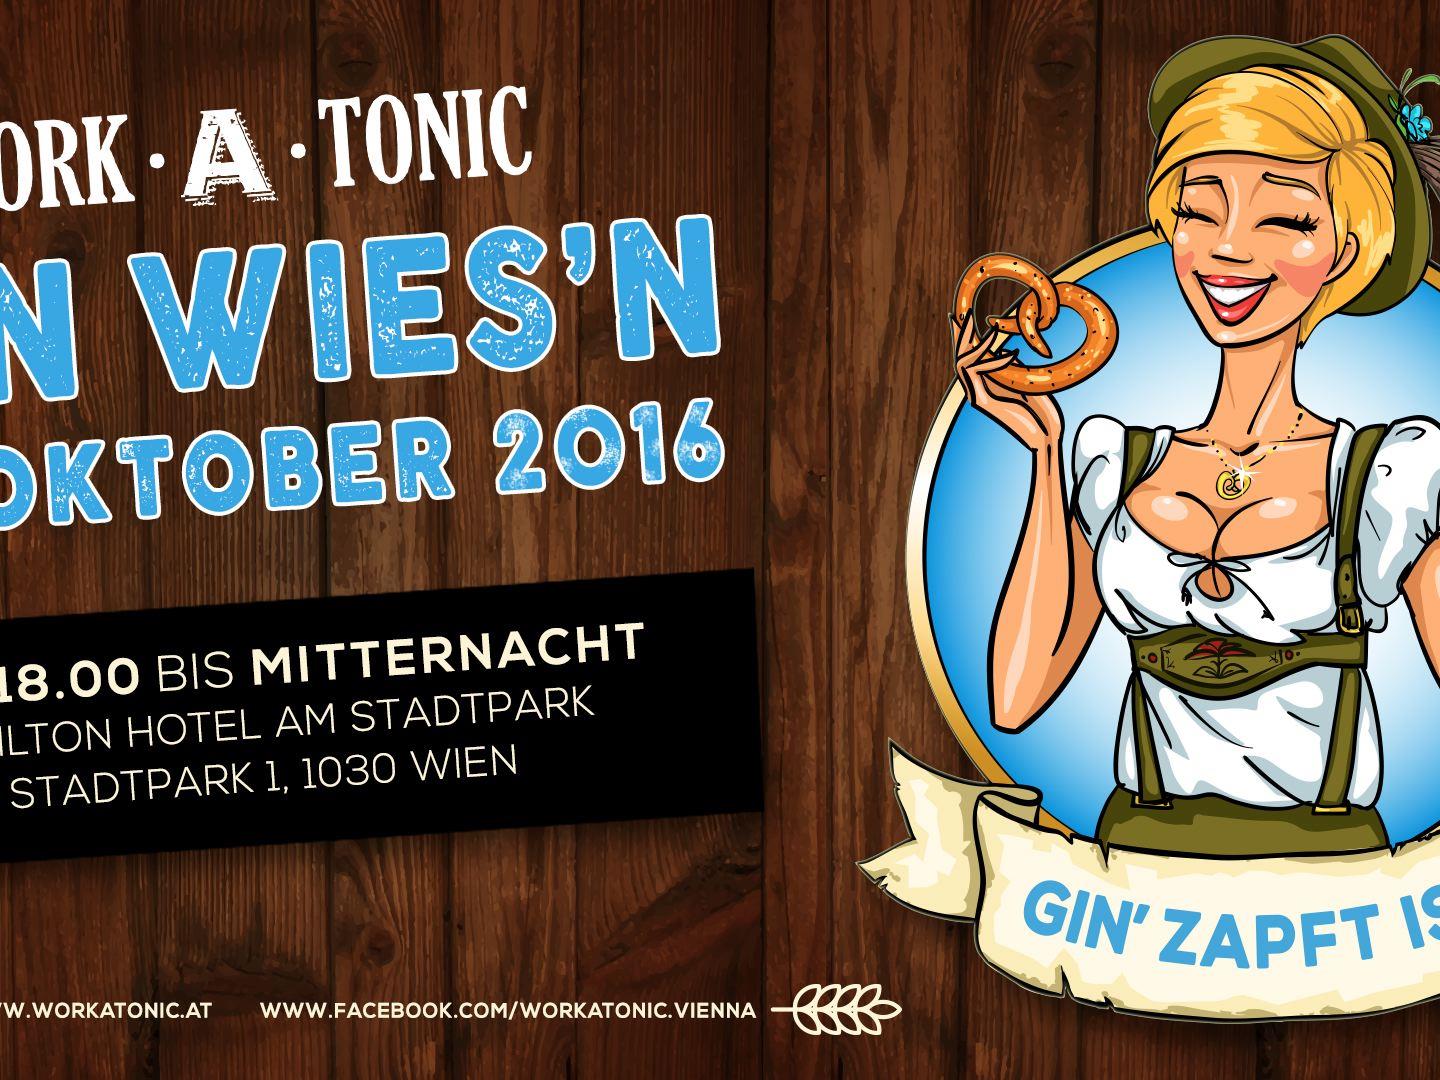 Das Afterwork-Clubbing "Work-A-Tonic" lädt am 13. Oktober zur "Gin-Wiesn".